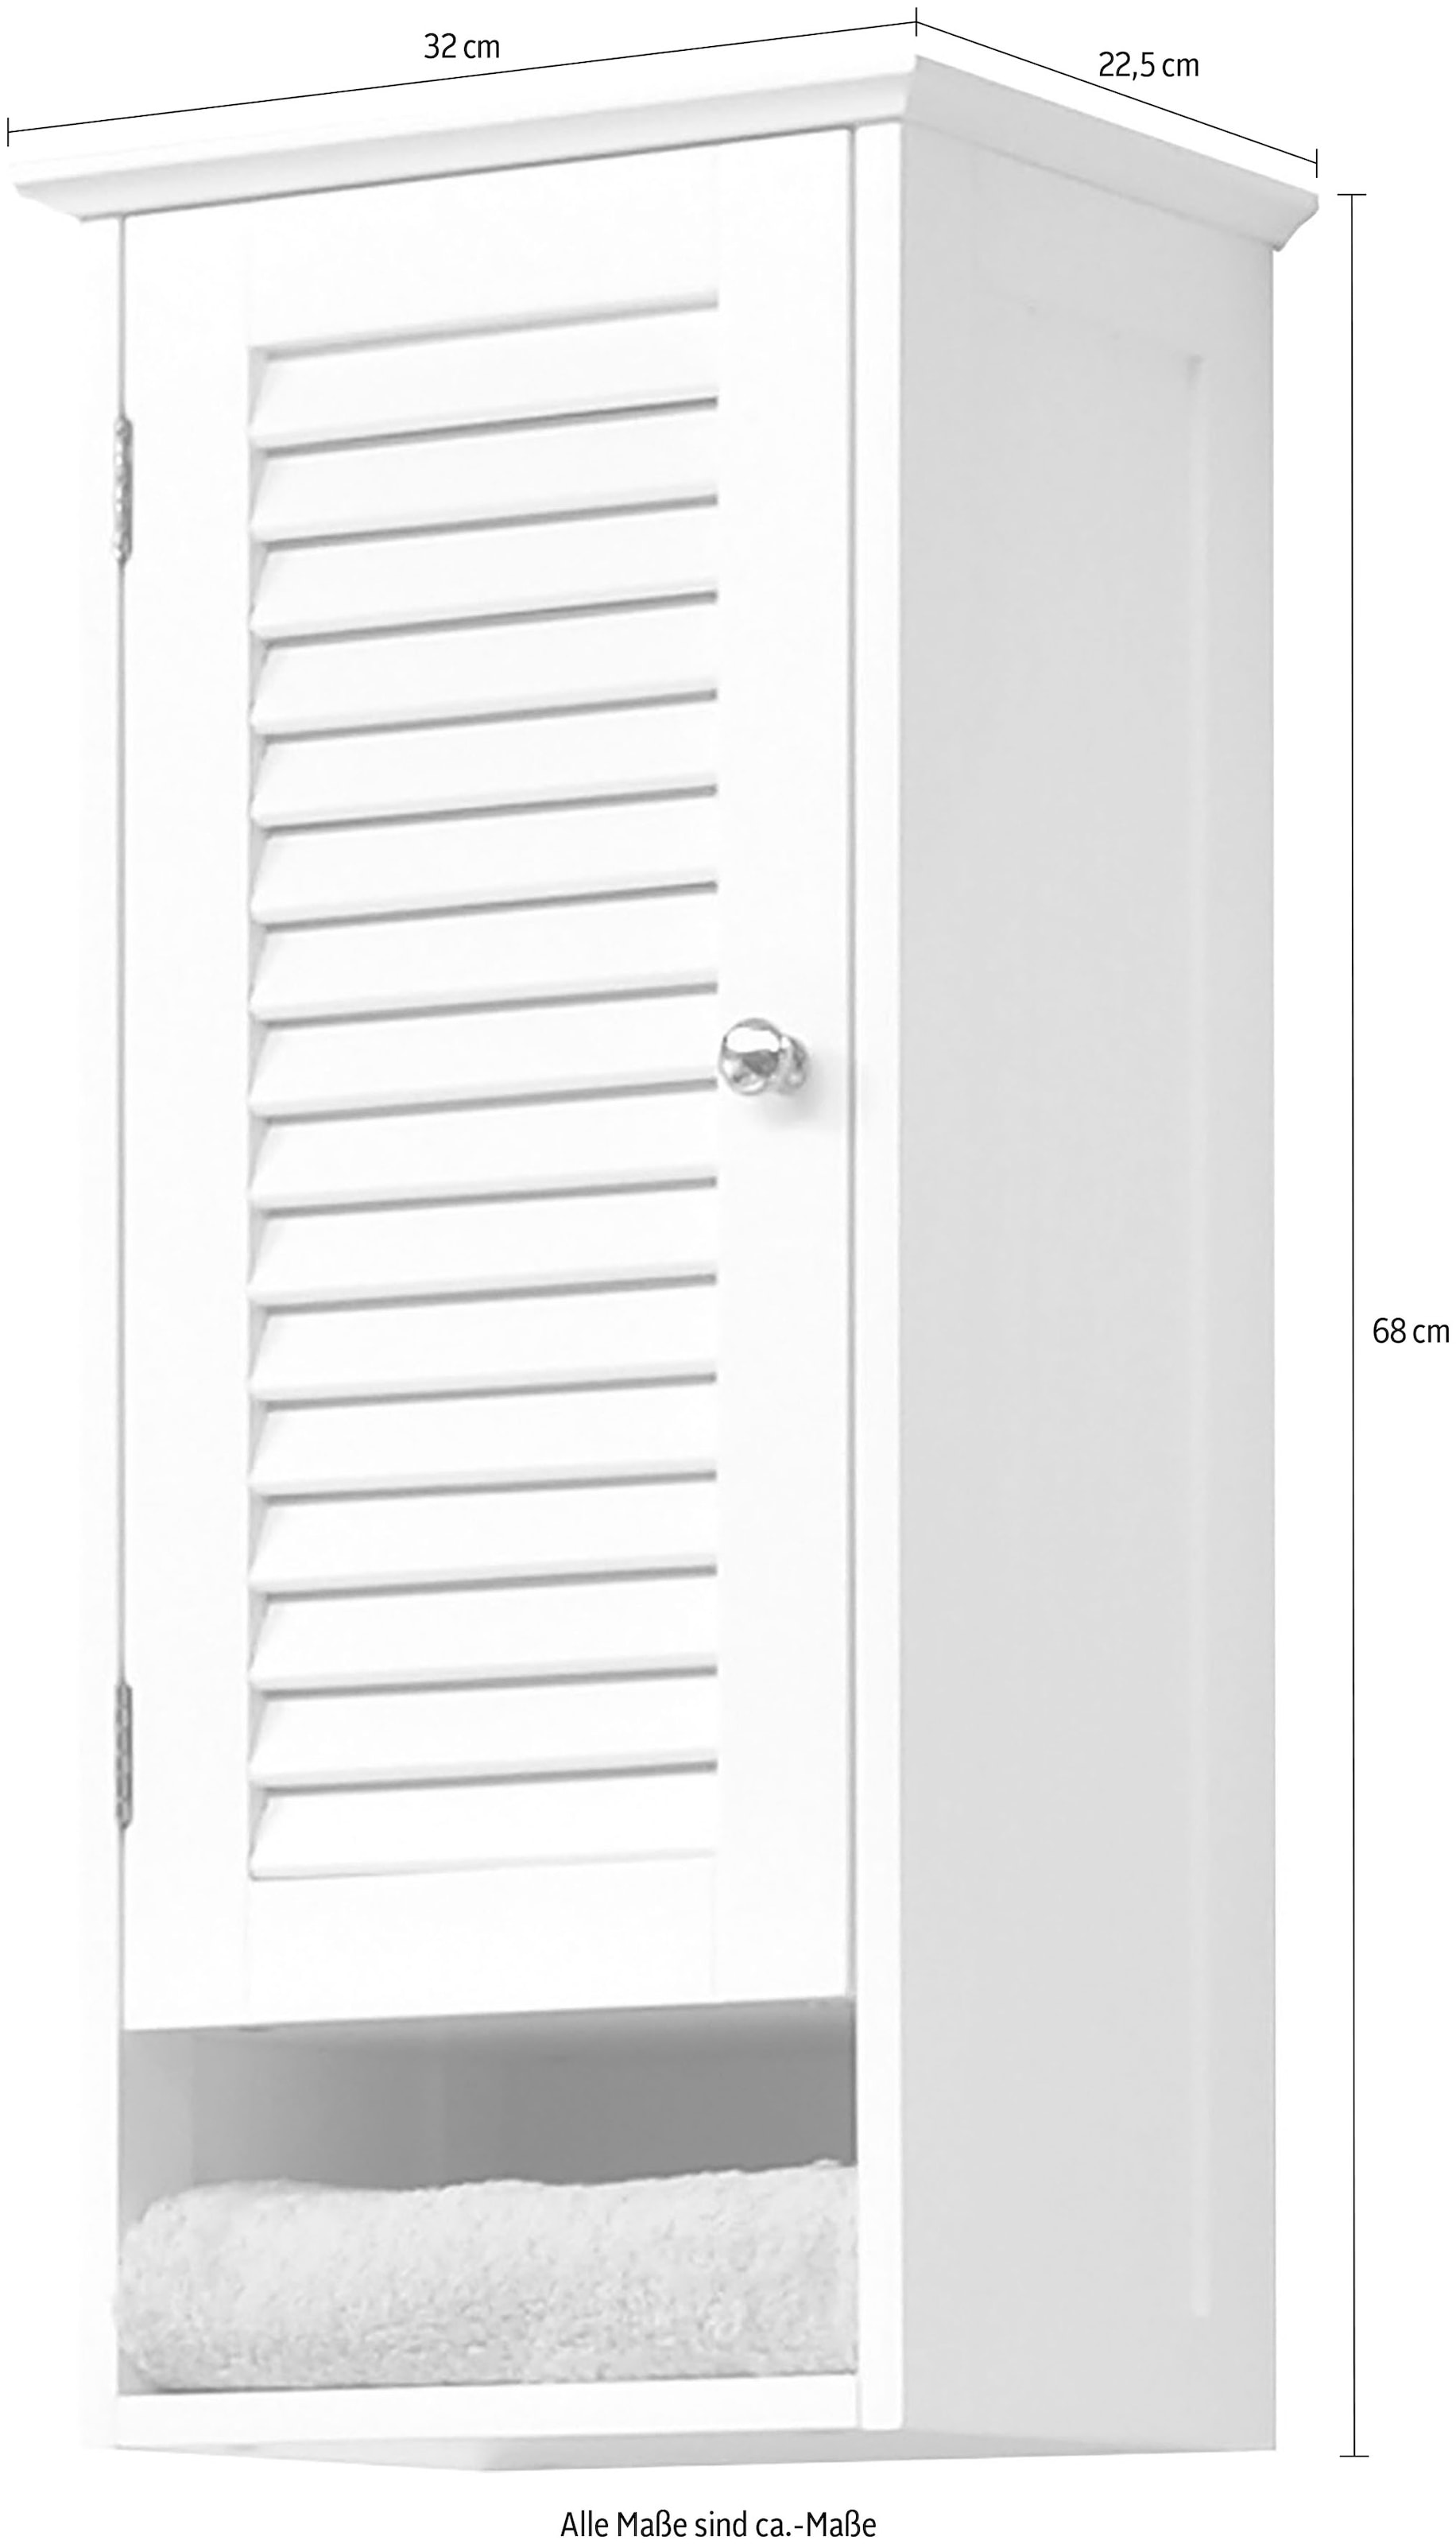 Saphir Hängeschrank »Quickset 928 Wand-Badschrank, 1 Tür, 1 Einlegeboden, 1 Nische«, Badezimmer-Hängeschrank, 32 cm breit, Weiß, Landhaus-Stil